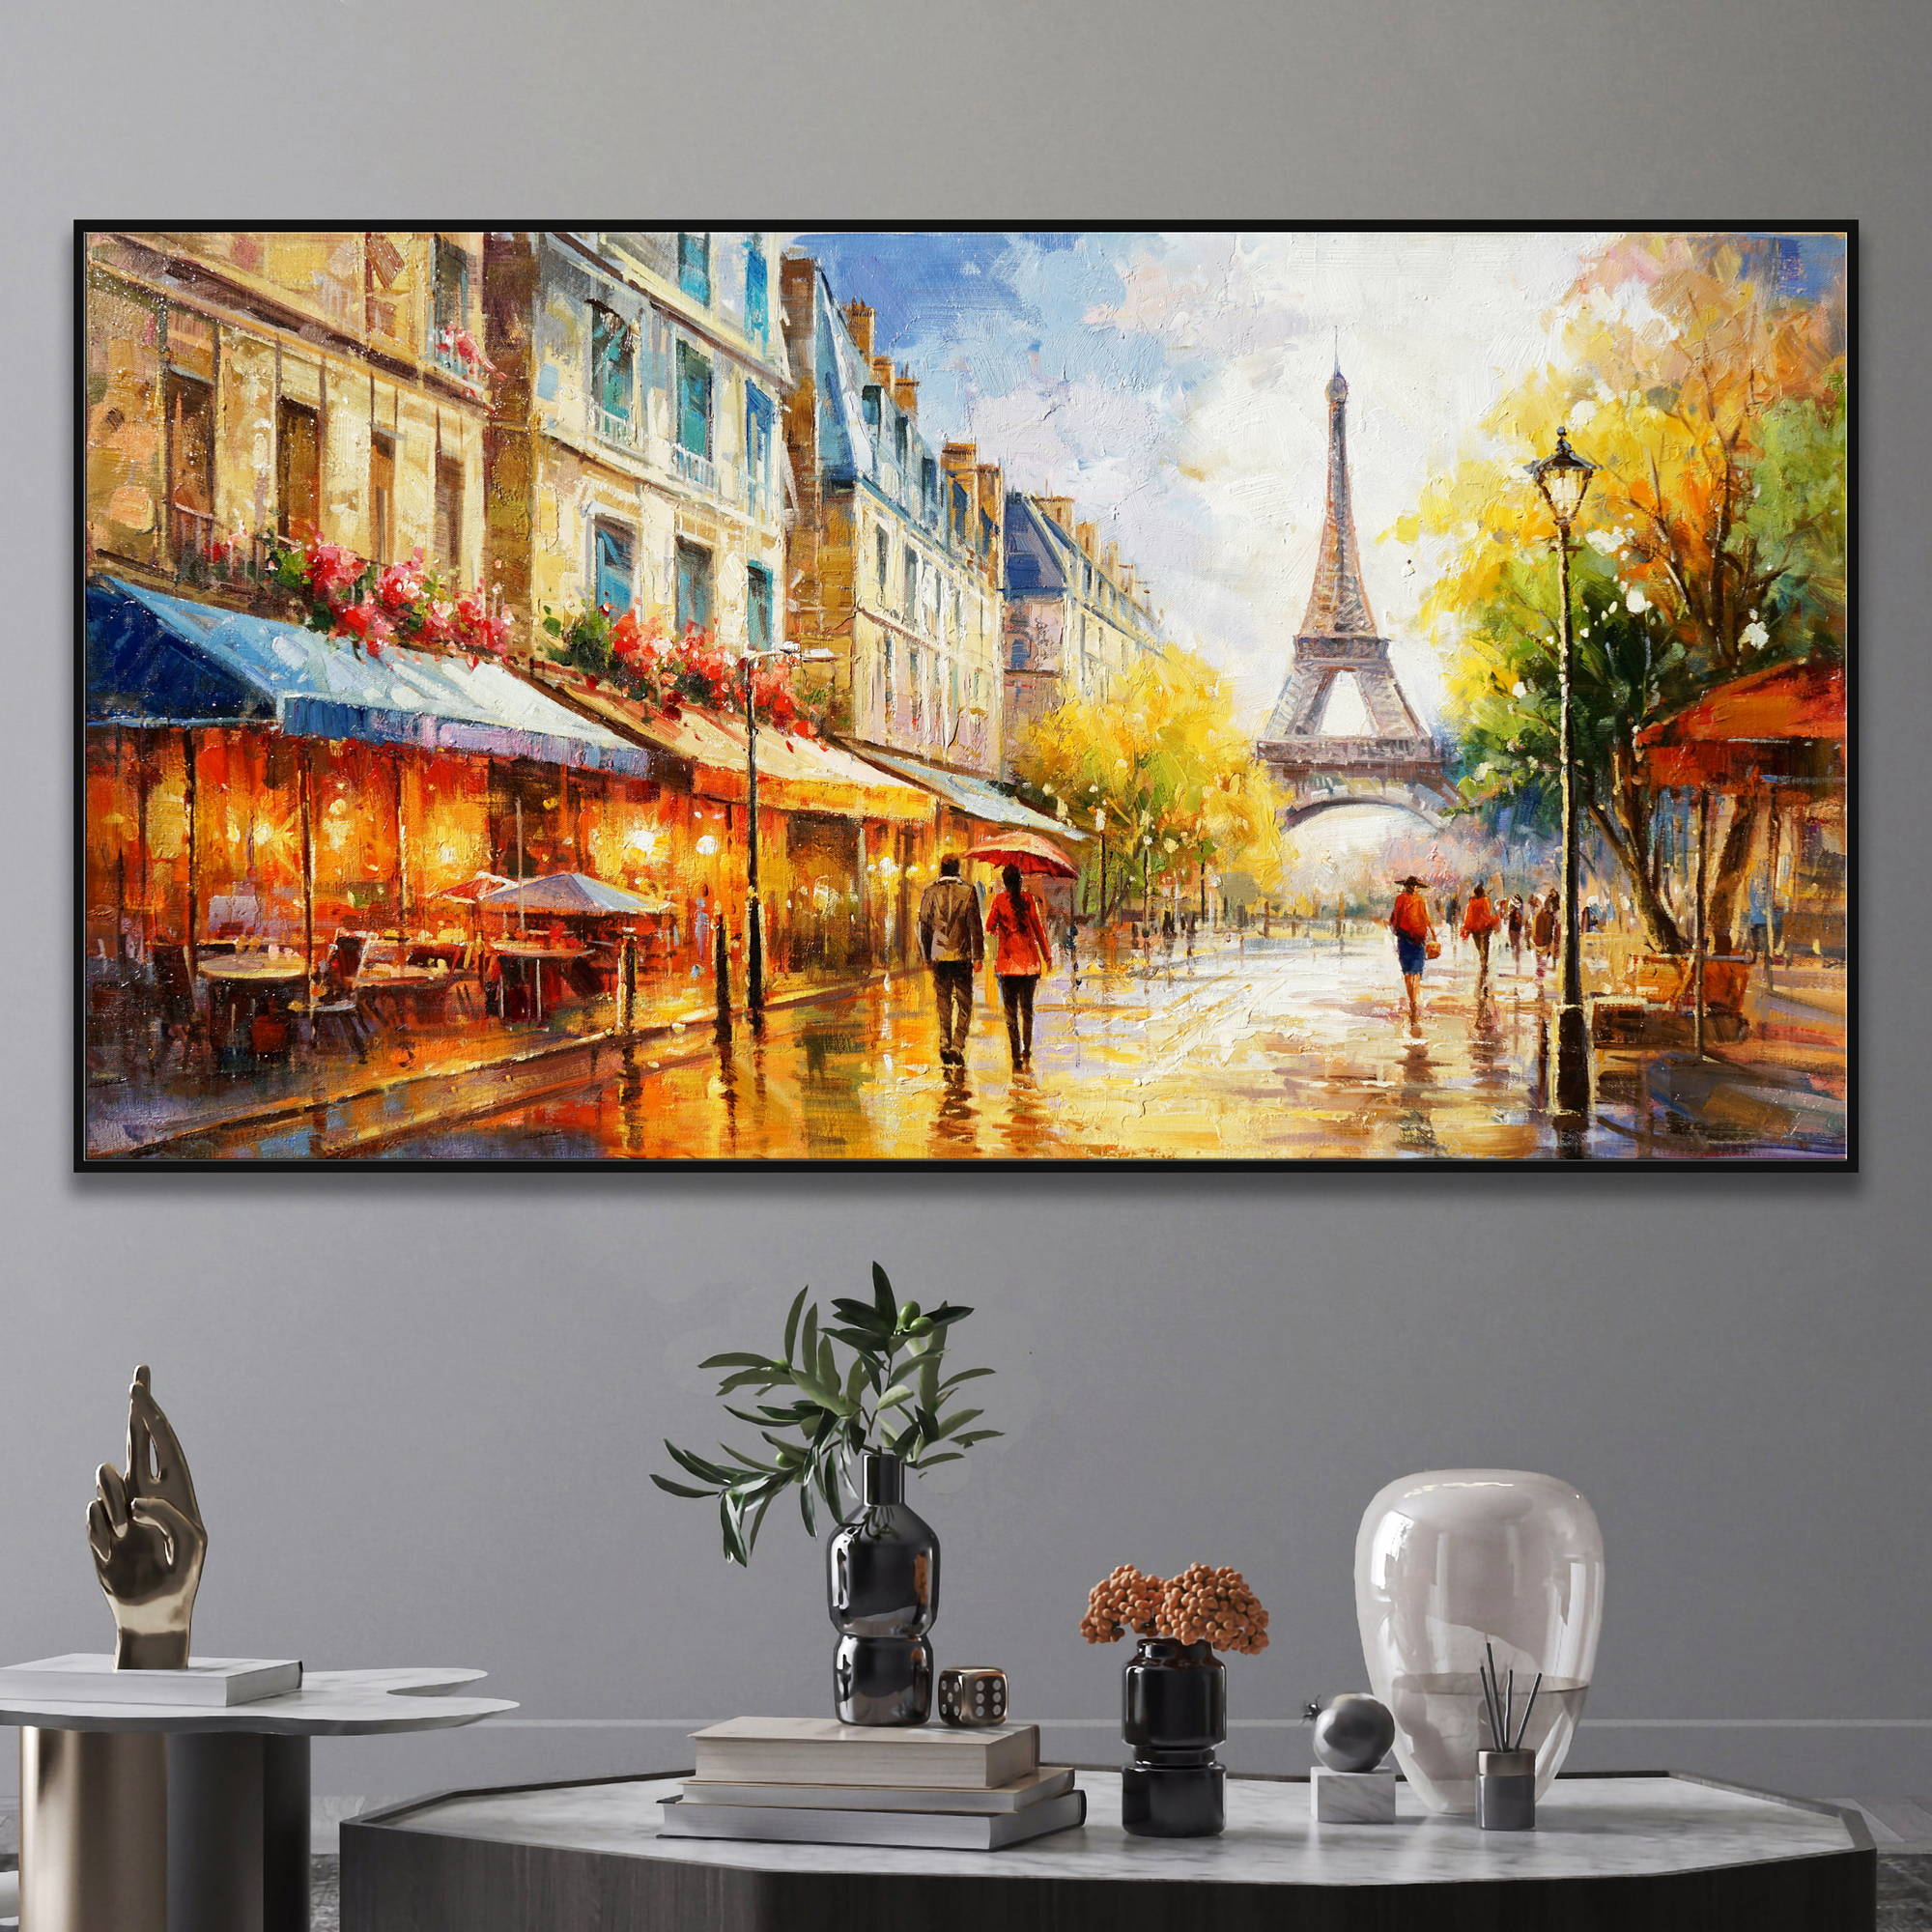 Dipinto ad olio di una strada a Parigi con la Torre Eiffel sullo sfondo